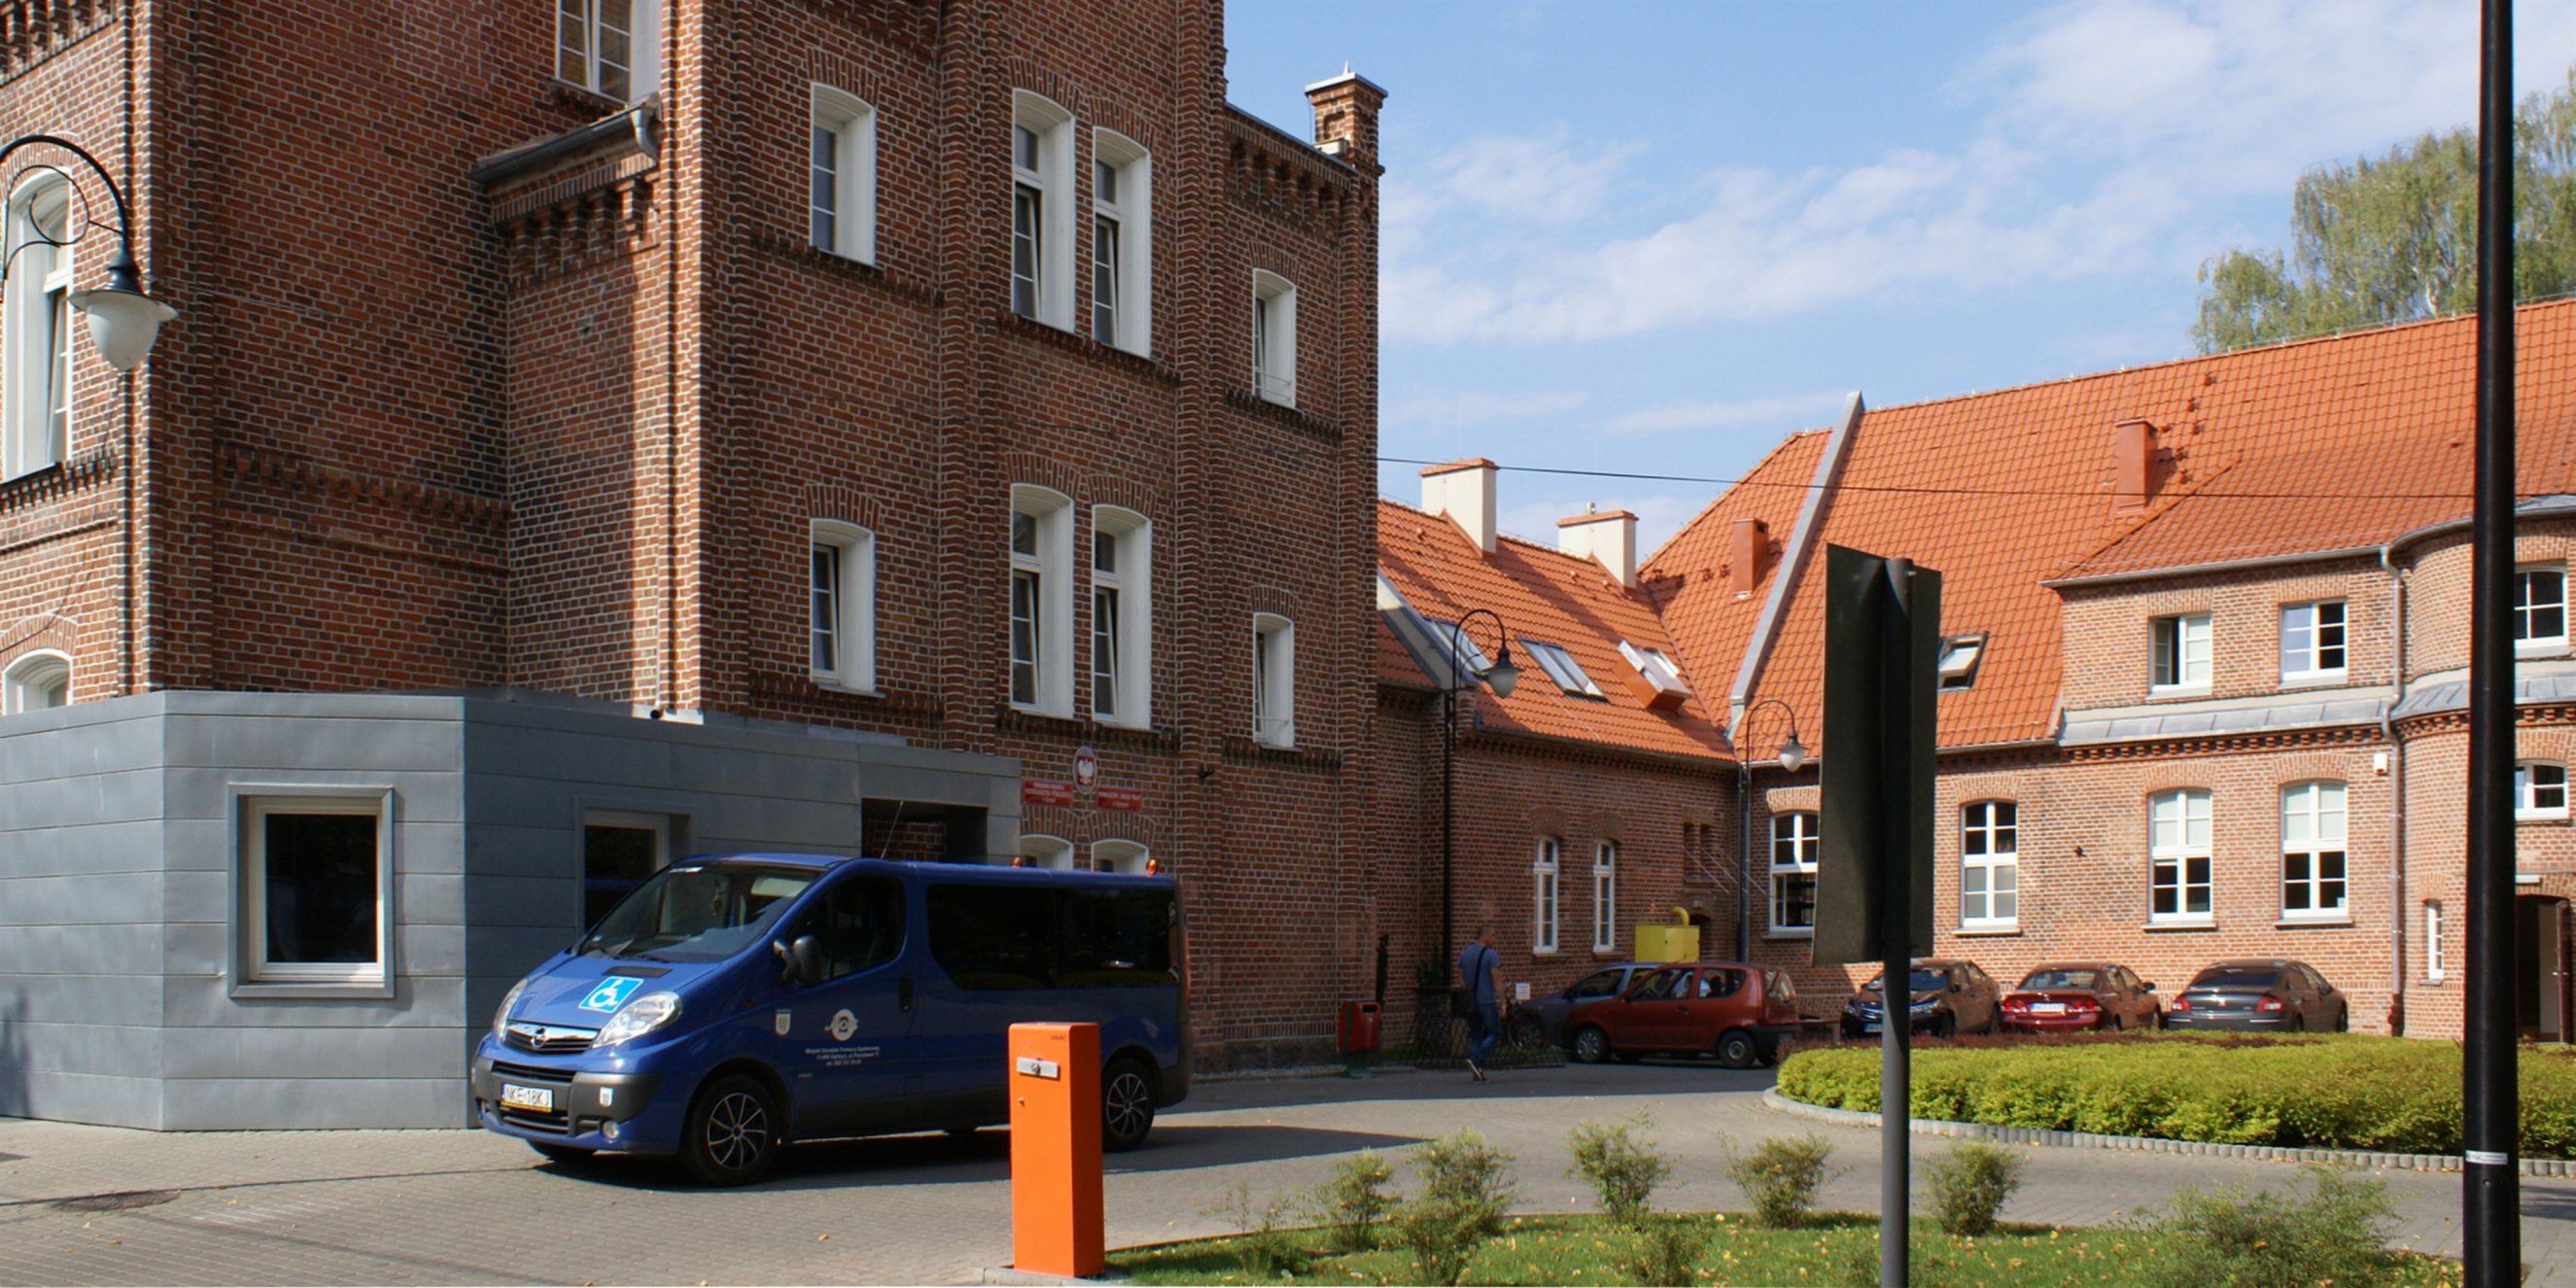 Starostwo Powiatowe w Kętrzynie – reconstruction